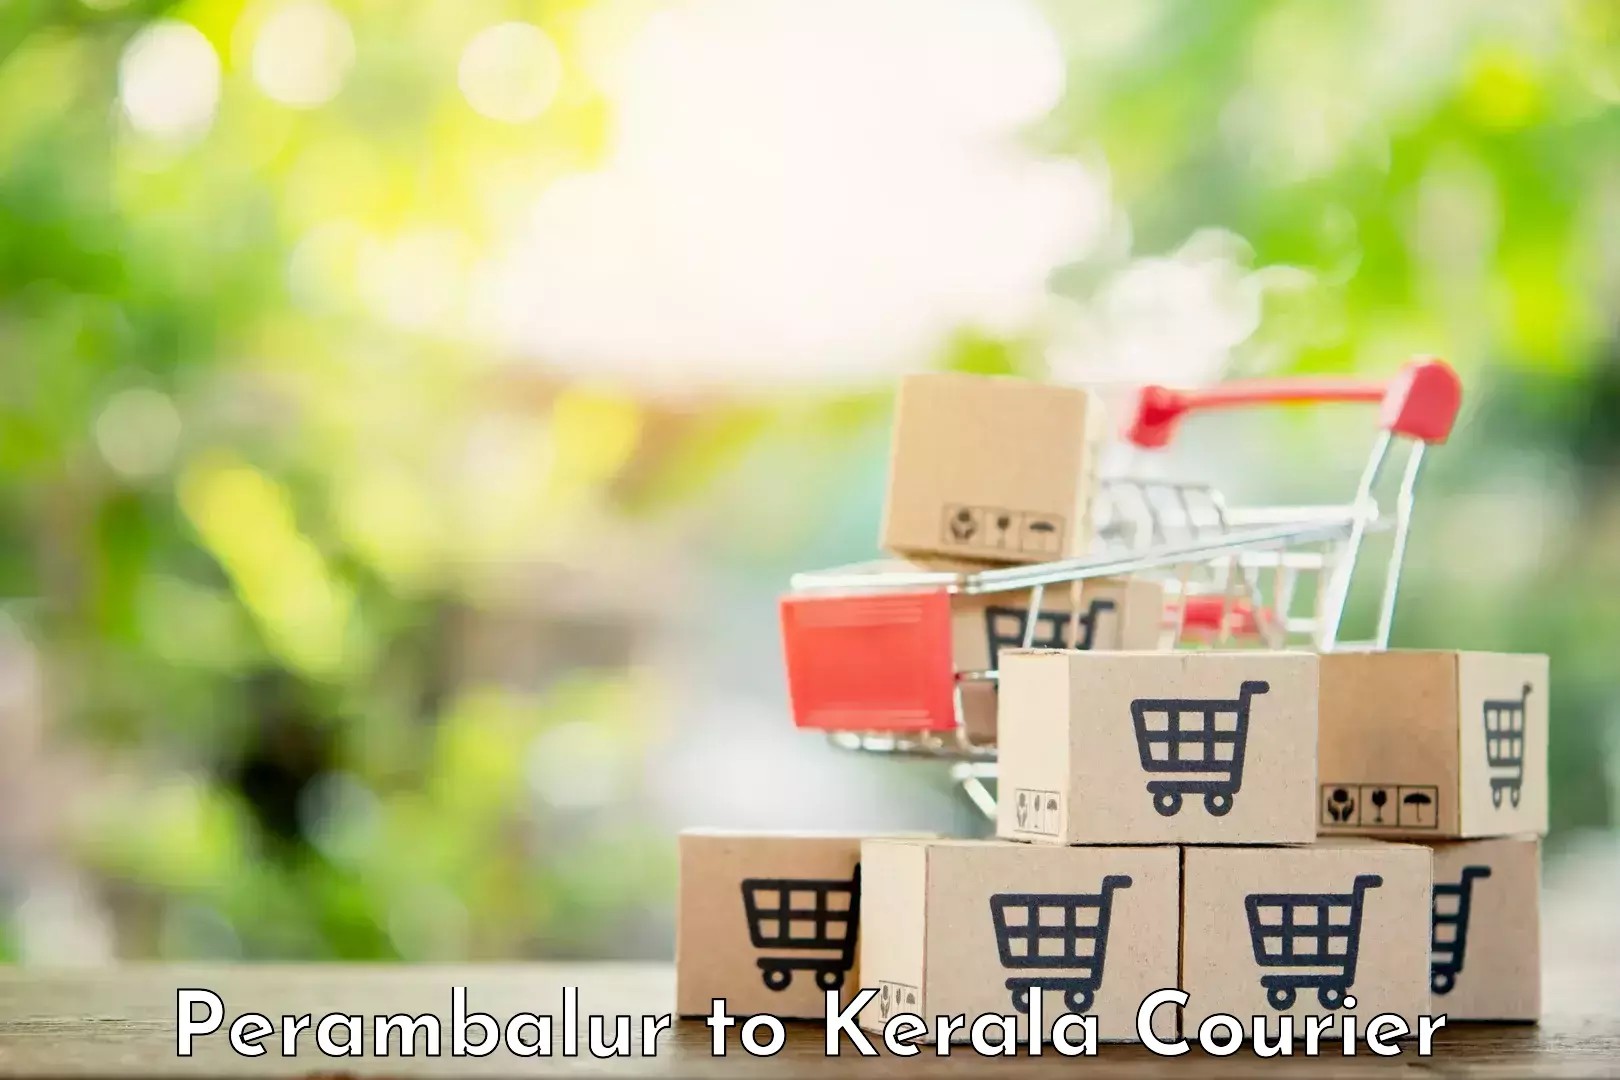 Courier tracking online Perambalur to Kakkayam